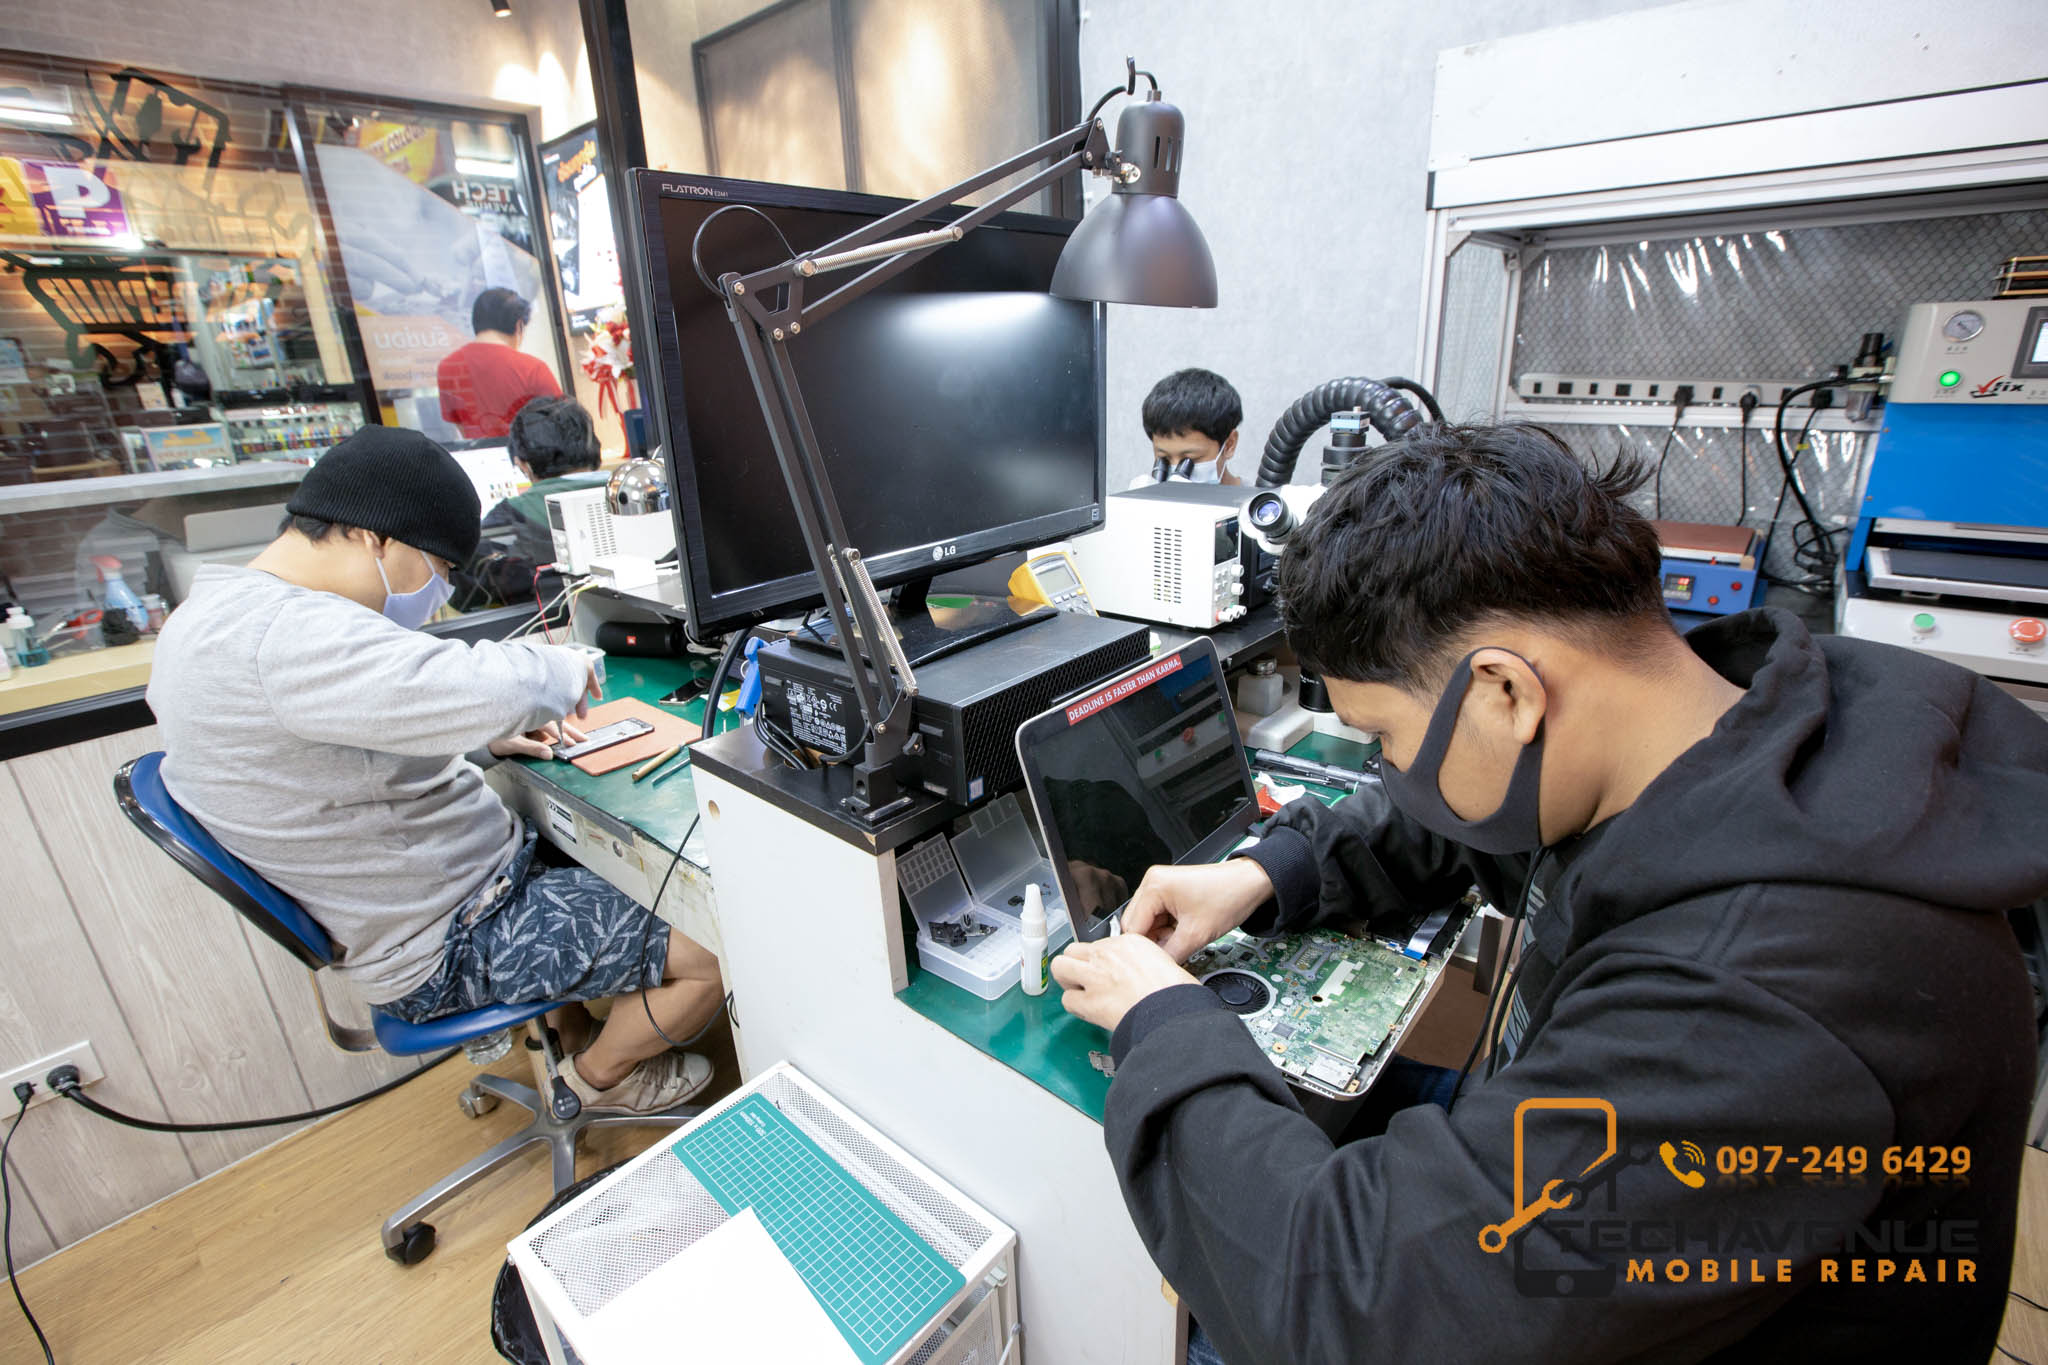 ร้านซ่อมมือถือ บางเขน รับส่ง ถึงบ้าน 🥇 ศูนย์ซ่อม โทรศัพท์มือถือ มือถือทุกรุ่น ทุกยี่ห้อ iPhone | Apple | Samsung | Huawei